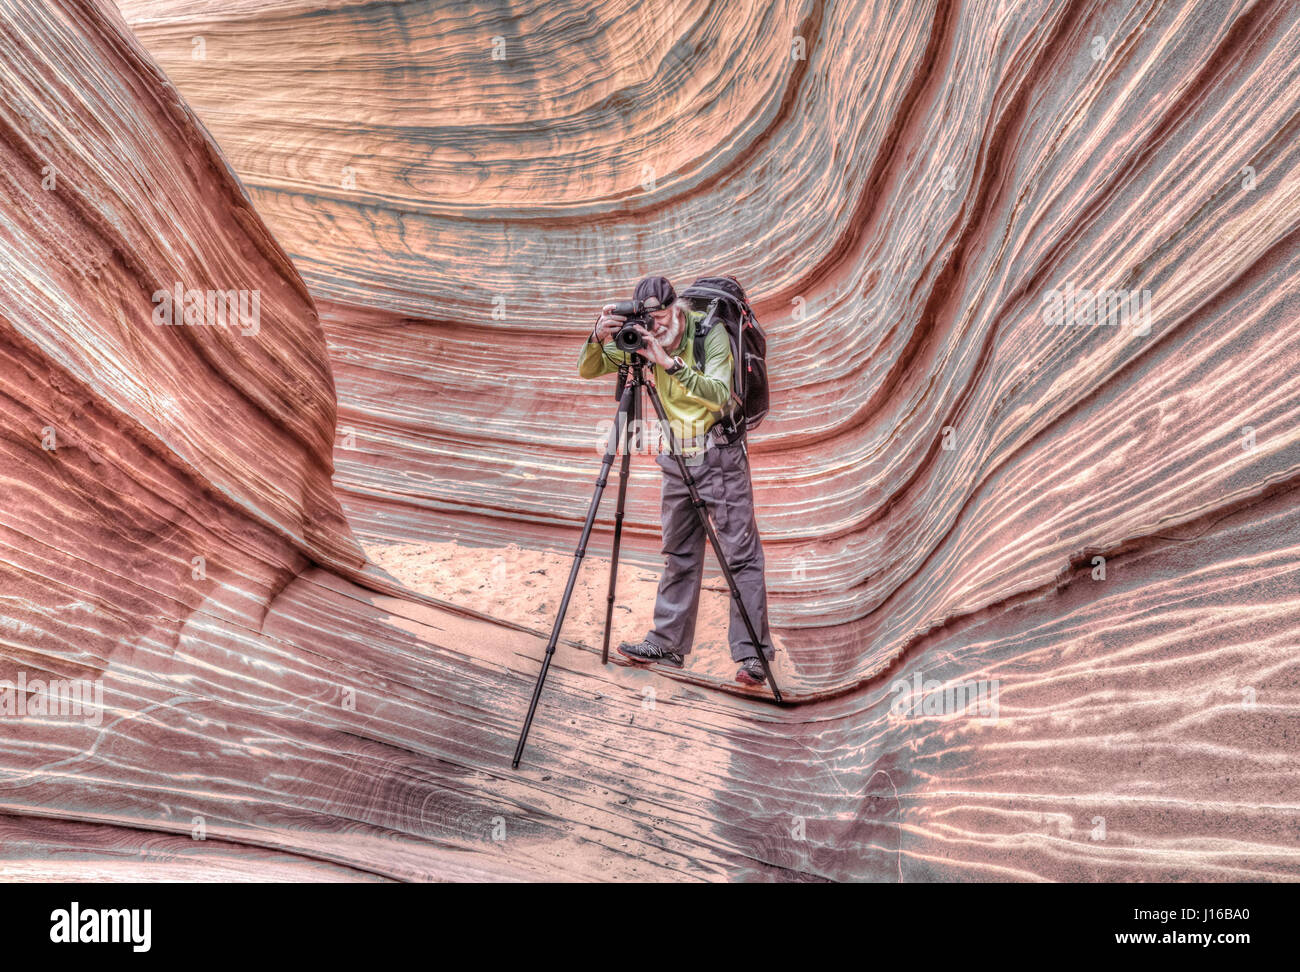 STEP-all'interno di una vera e propria vita pittura surrealista. Benvenuti al bizzarro paesaggio desertico dove lone visitatori sembrano aver chiesto in un dipinto del surrealista maestri dell'arte-mondo. Foto dal fotografo G. Brad Lewis (56) di Southern Utah mostrare bellissime pennello-come texture di un posto chiamato l'onda situato nel Paria Canyon-Vermilion scogliere selvagge. L'onda è tale per un prezioso luogo solo 20 persone-per-giorno sia concesso il permesso di visita. Foto Stock